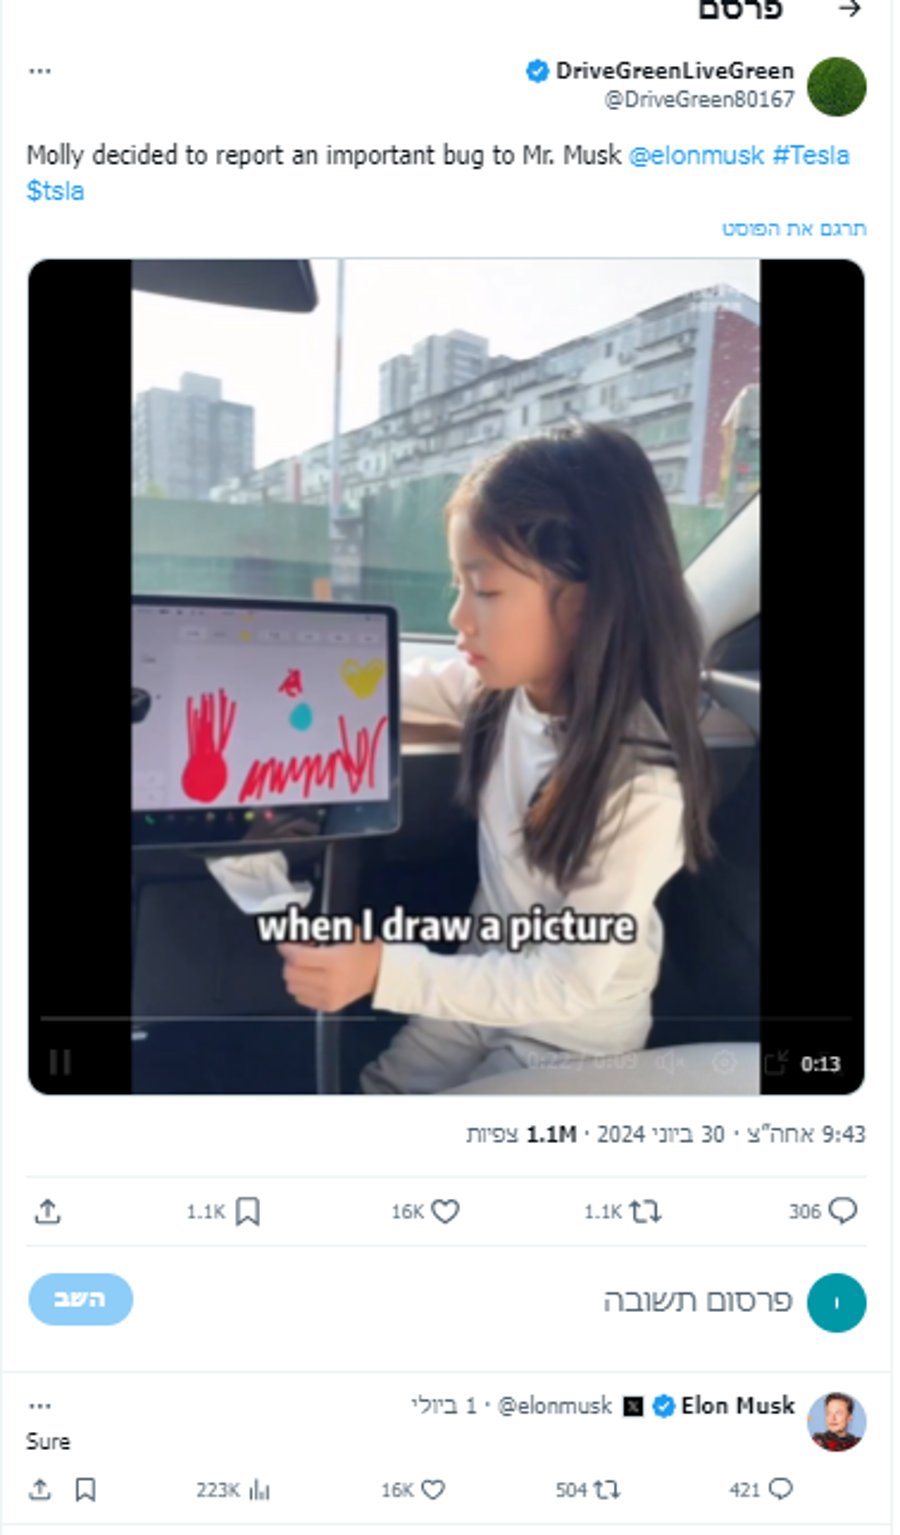 הסינית הקטנה ביקשה מאילון מאסק לצייר בטסלה - כך הוא ענה לה 